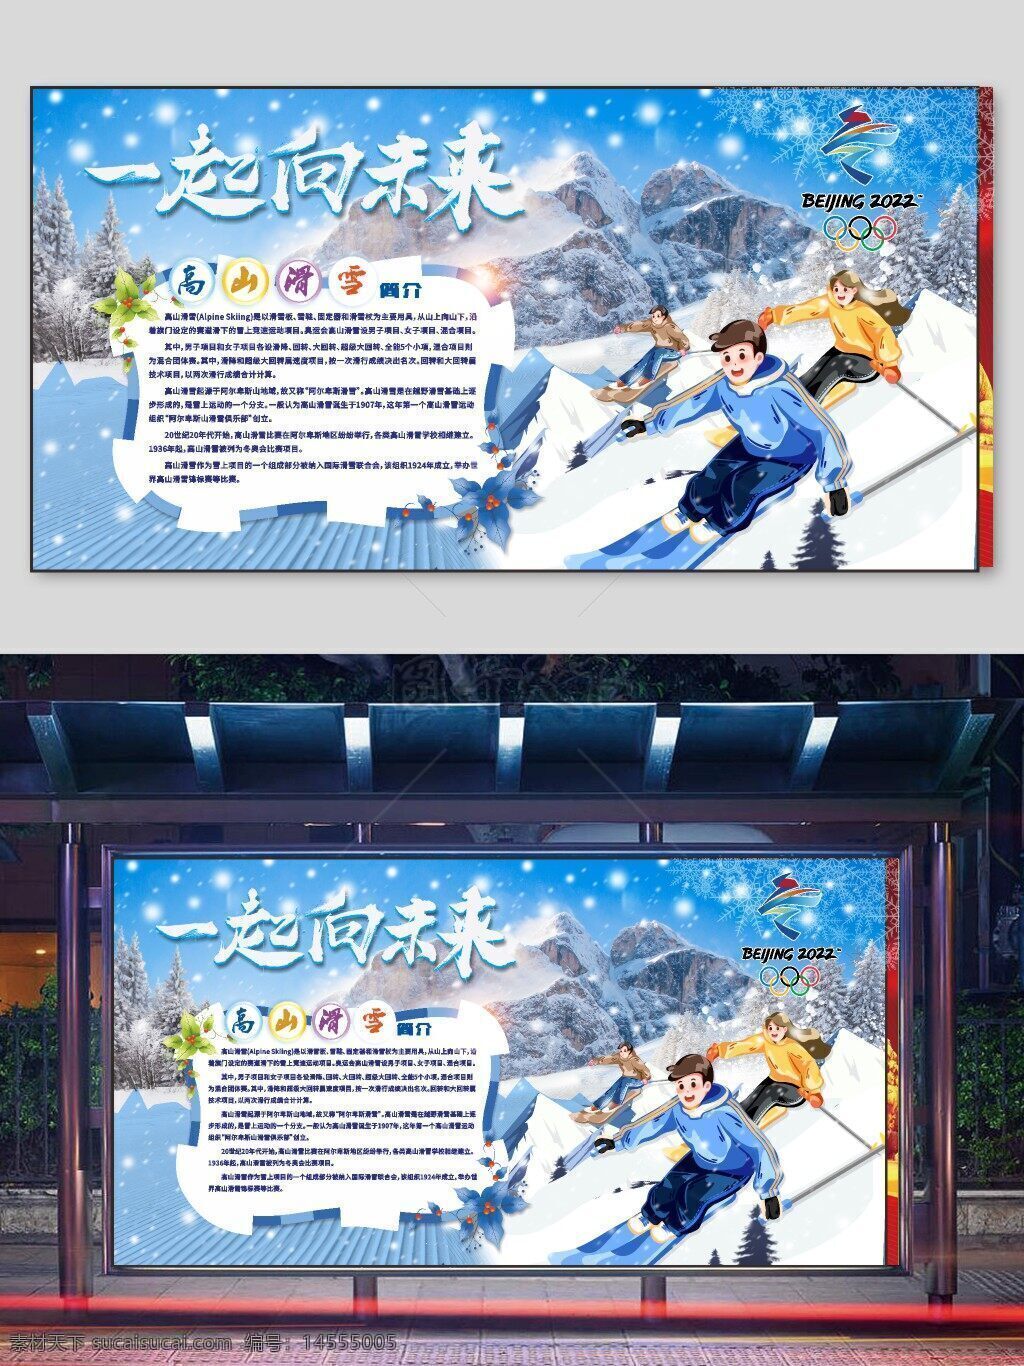 滑冰 冬奥 奥运会 冰雪运动 相约北京 北京冬奥会 奥运主题 冬奥会海报 奥林匹克 奥运文化 花样滑冰 冬奥会展板 2022北京冬奥会